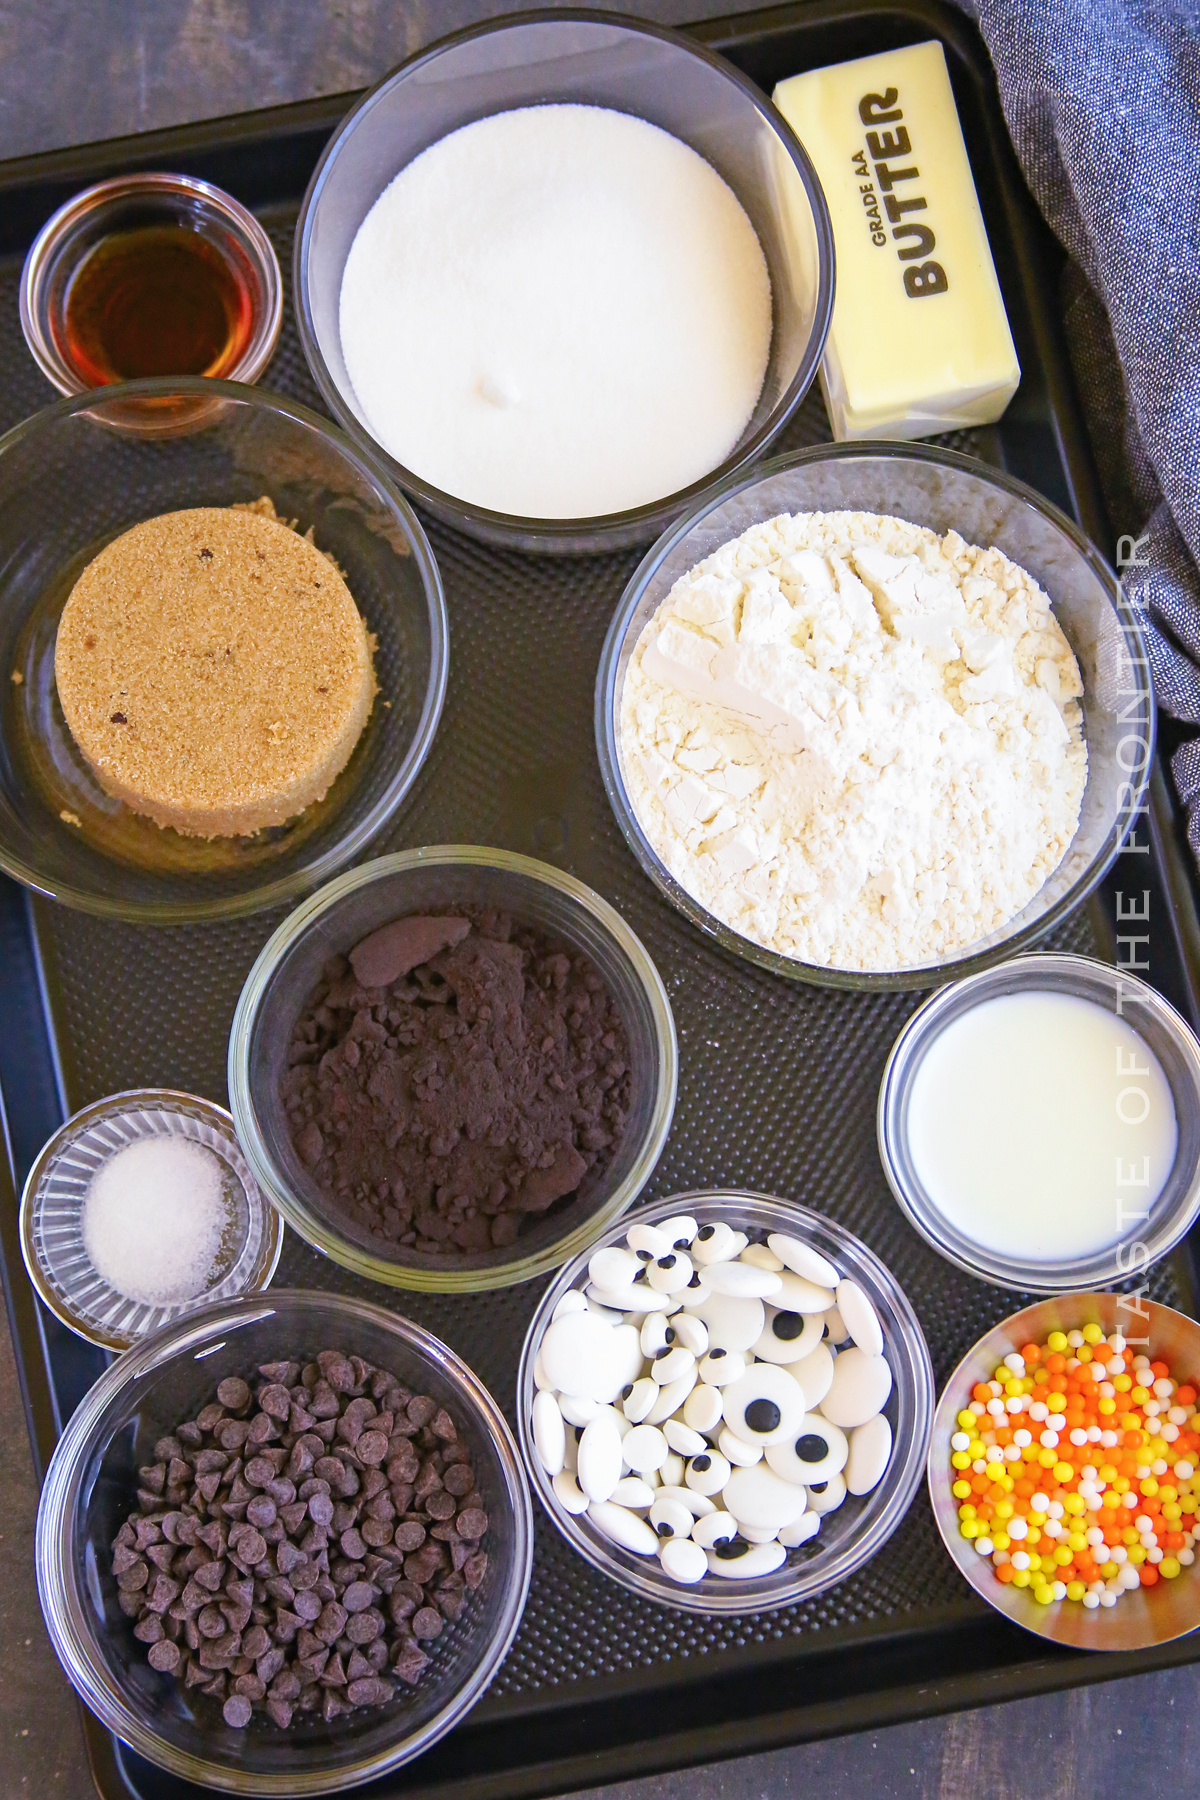 Ingredients for Halloween Cookie Dough